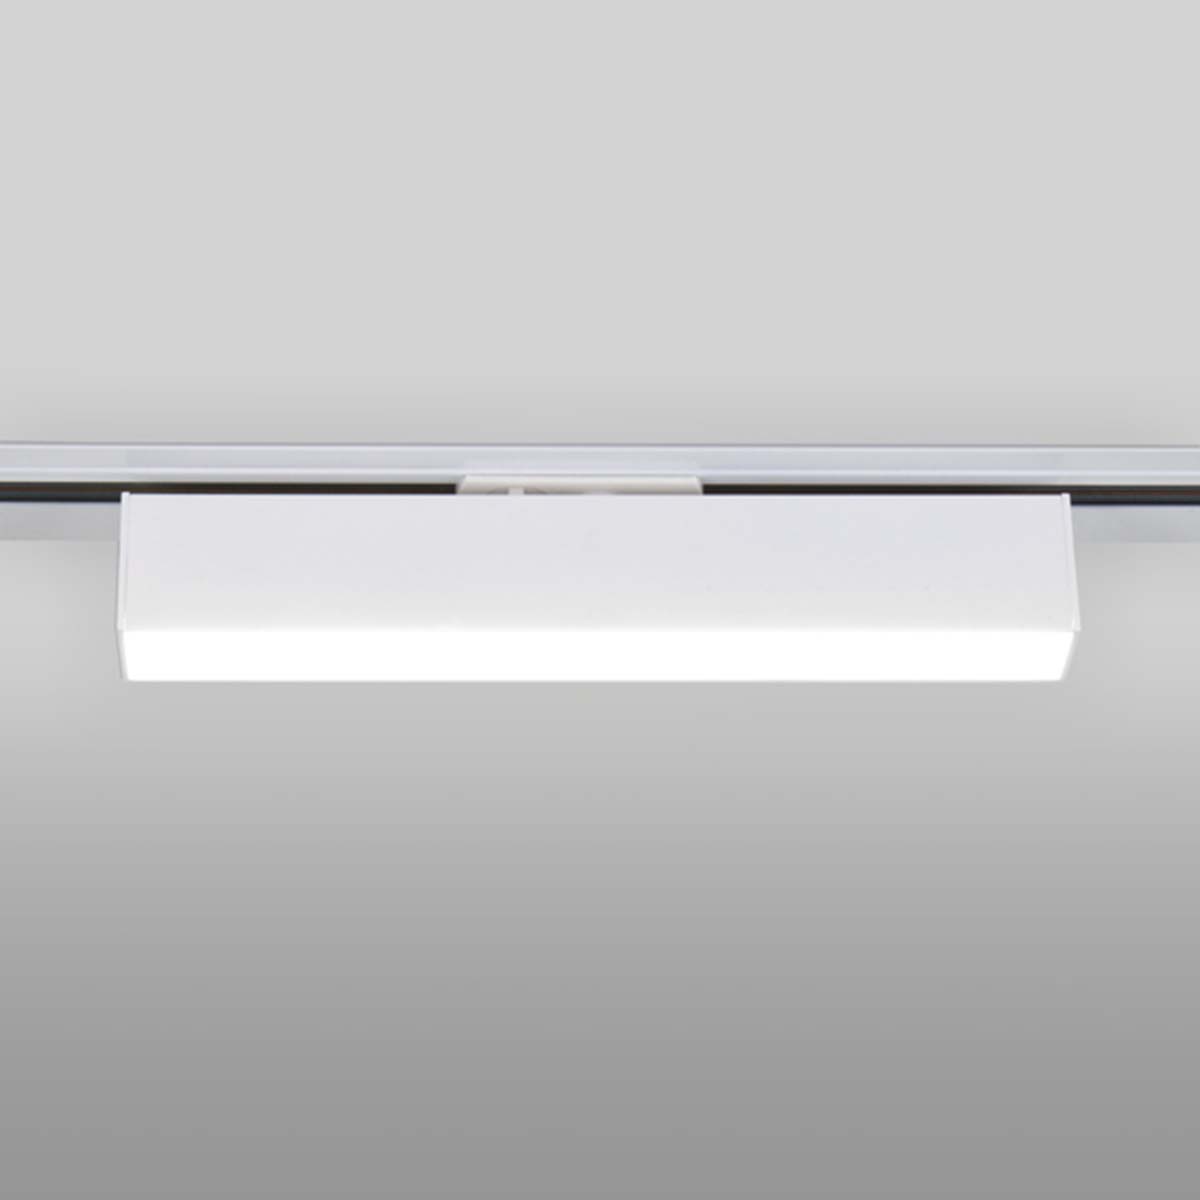 Трековый светодиодный светильник Elektrostandard X-Line белый матовый 10W 4200K LTB53 4690389161537